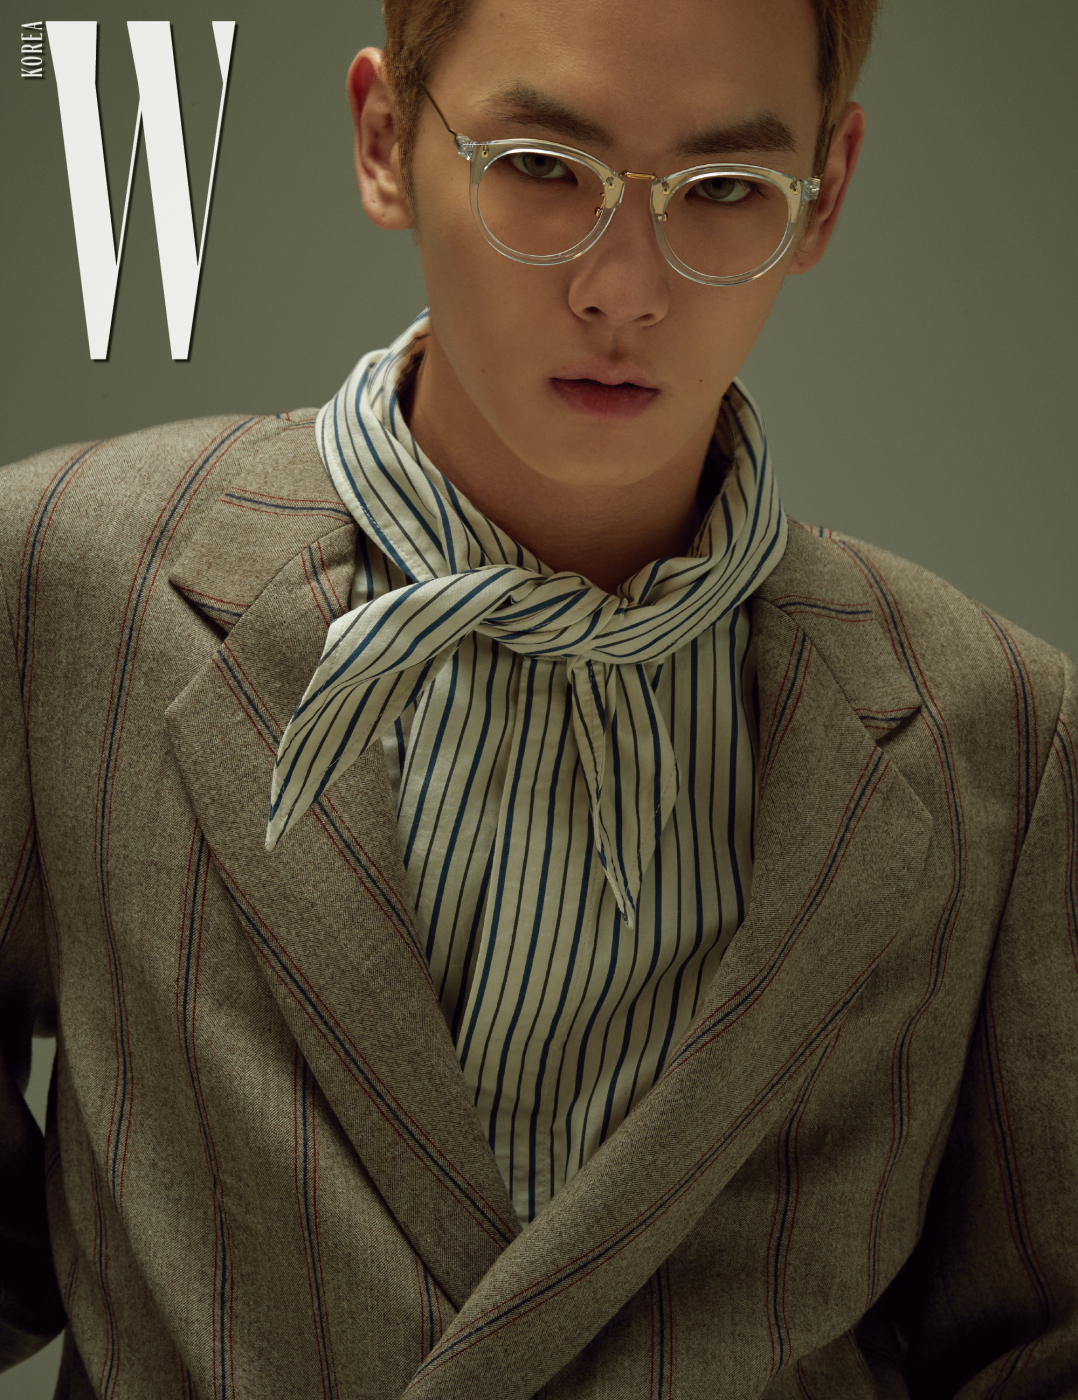 줄무늬 셔츠와 재킷은 모두 Wooyoungmi, 안경은 Paul Hueman 제품.